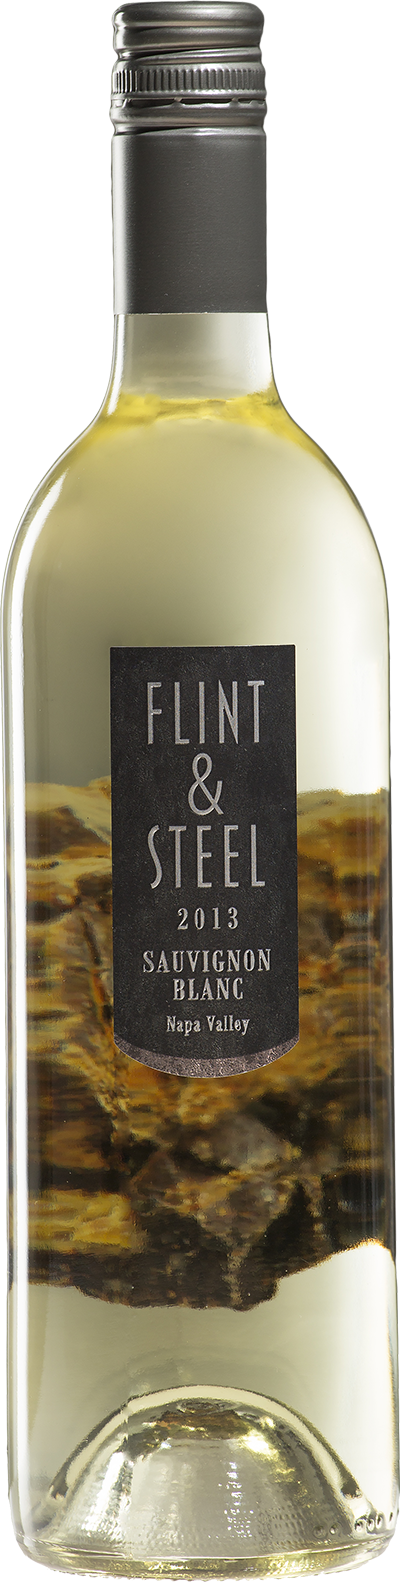 Flint & Steel Sauvignon Blanc Napa Valley